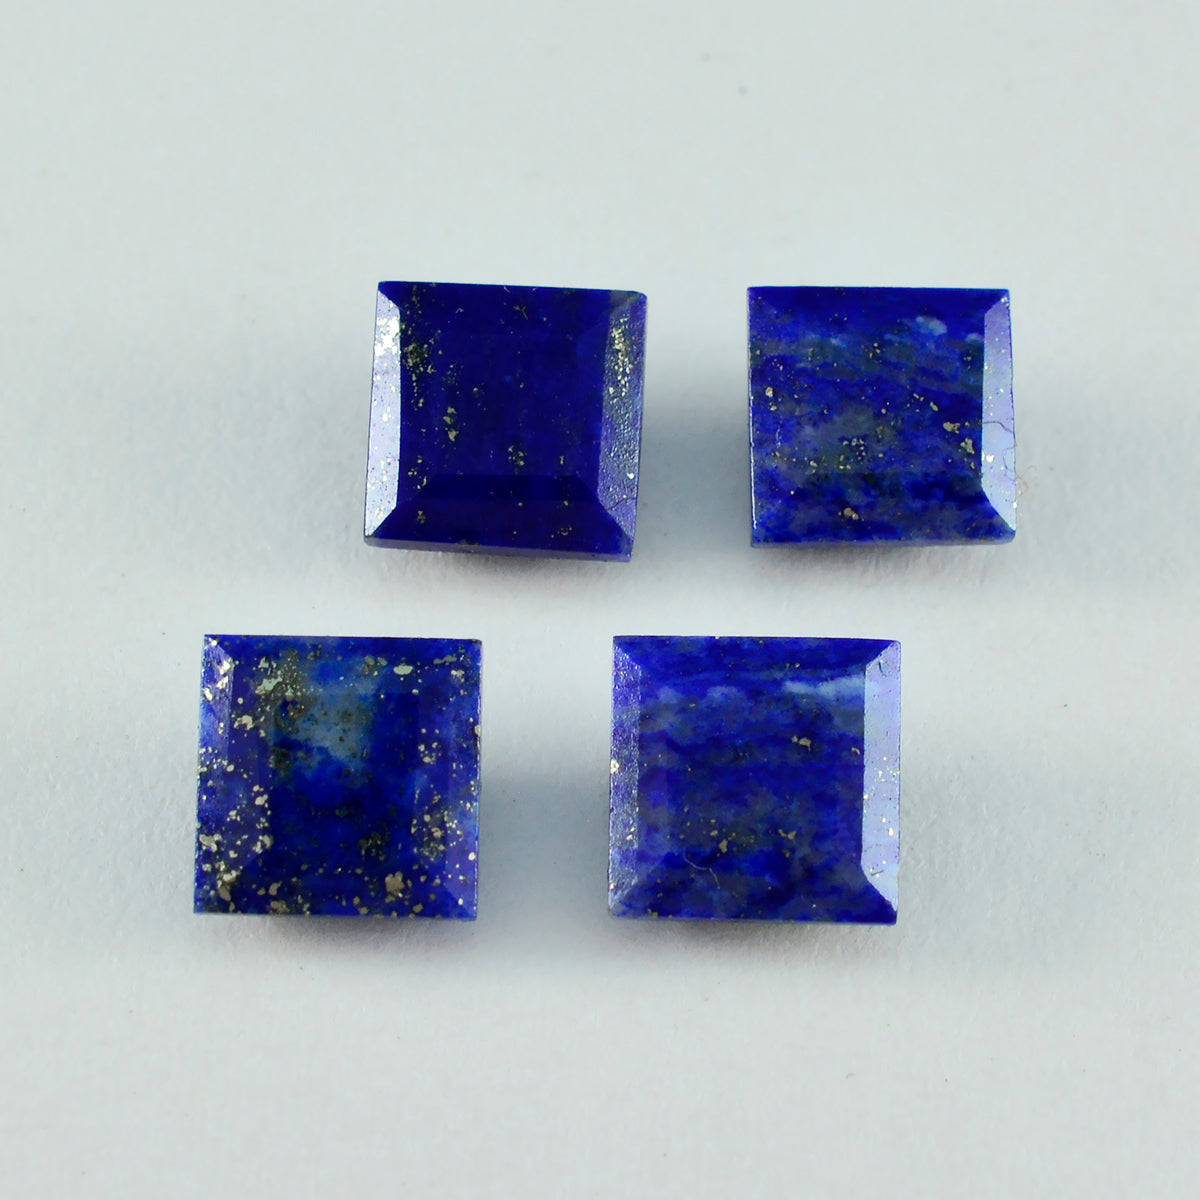 riyogems 1 шт. настоящий синий лазурит ограненный 9x9 мм квадратной формы драгоценный камень удивительного качества